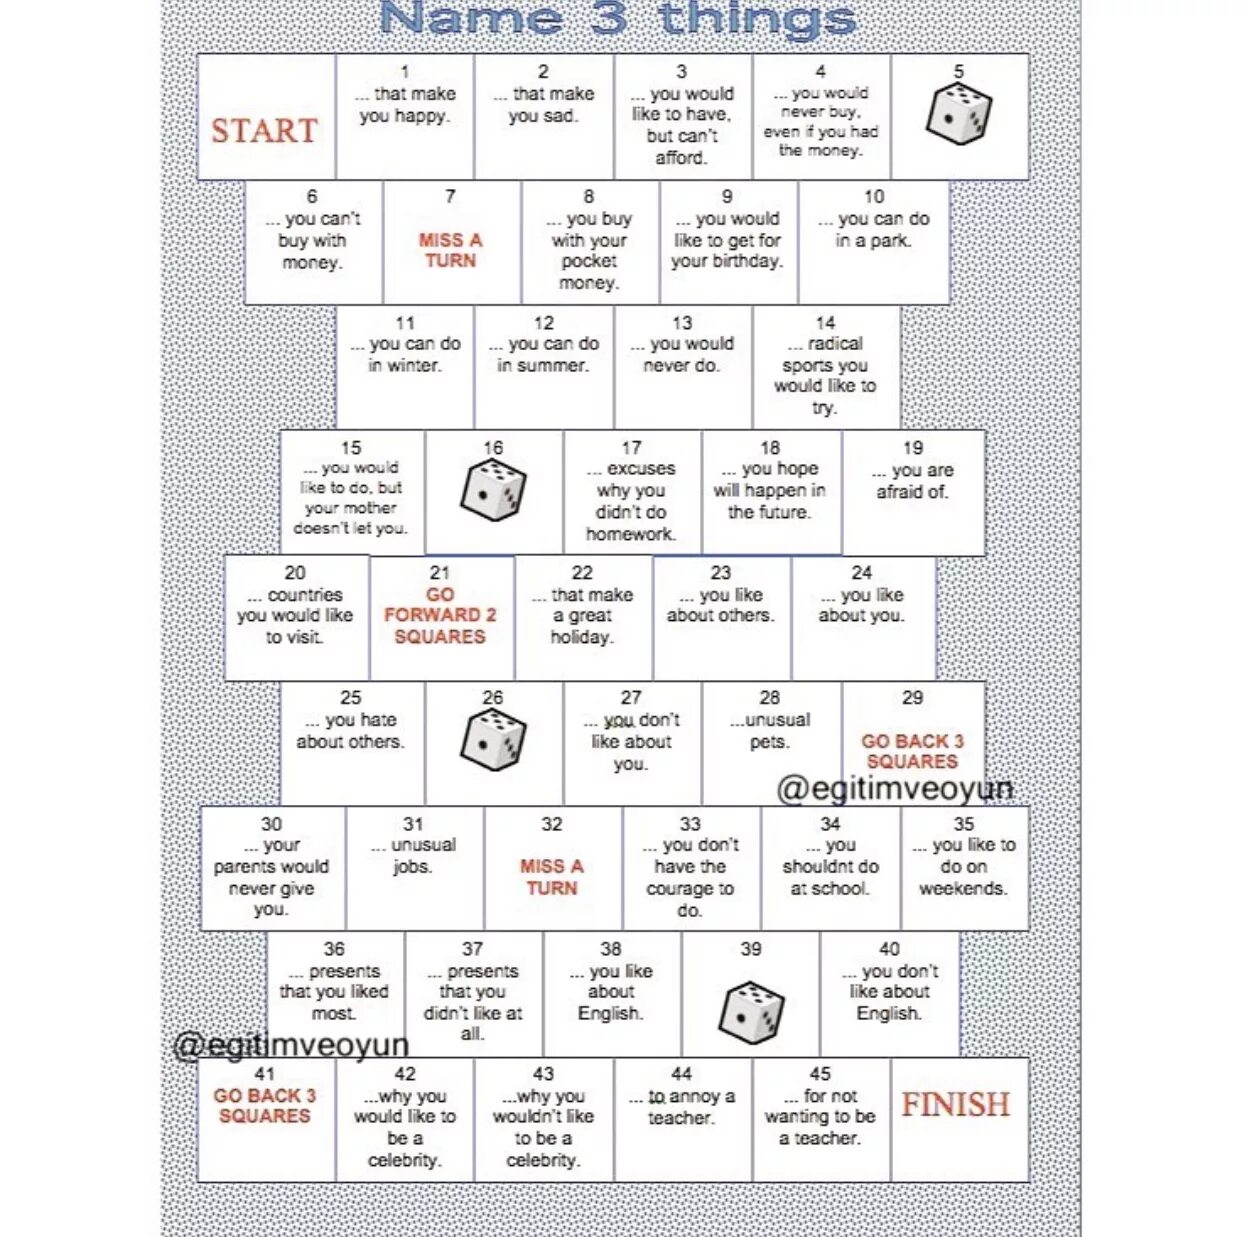 Name 3. Name 3 things Board game. Name three things. Name 5 things game.